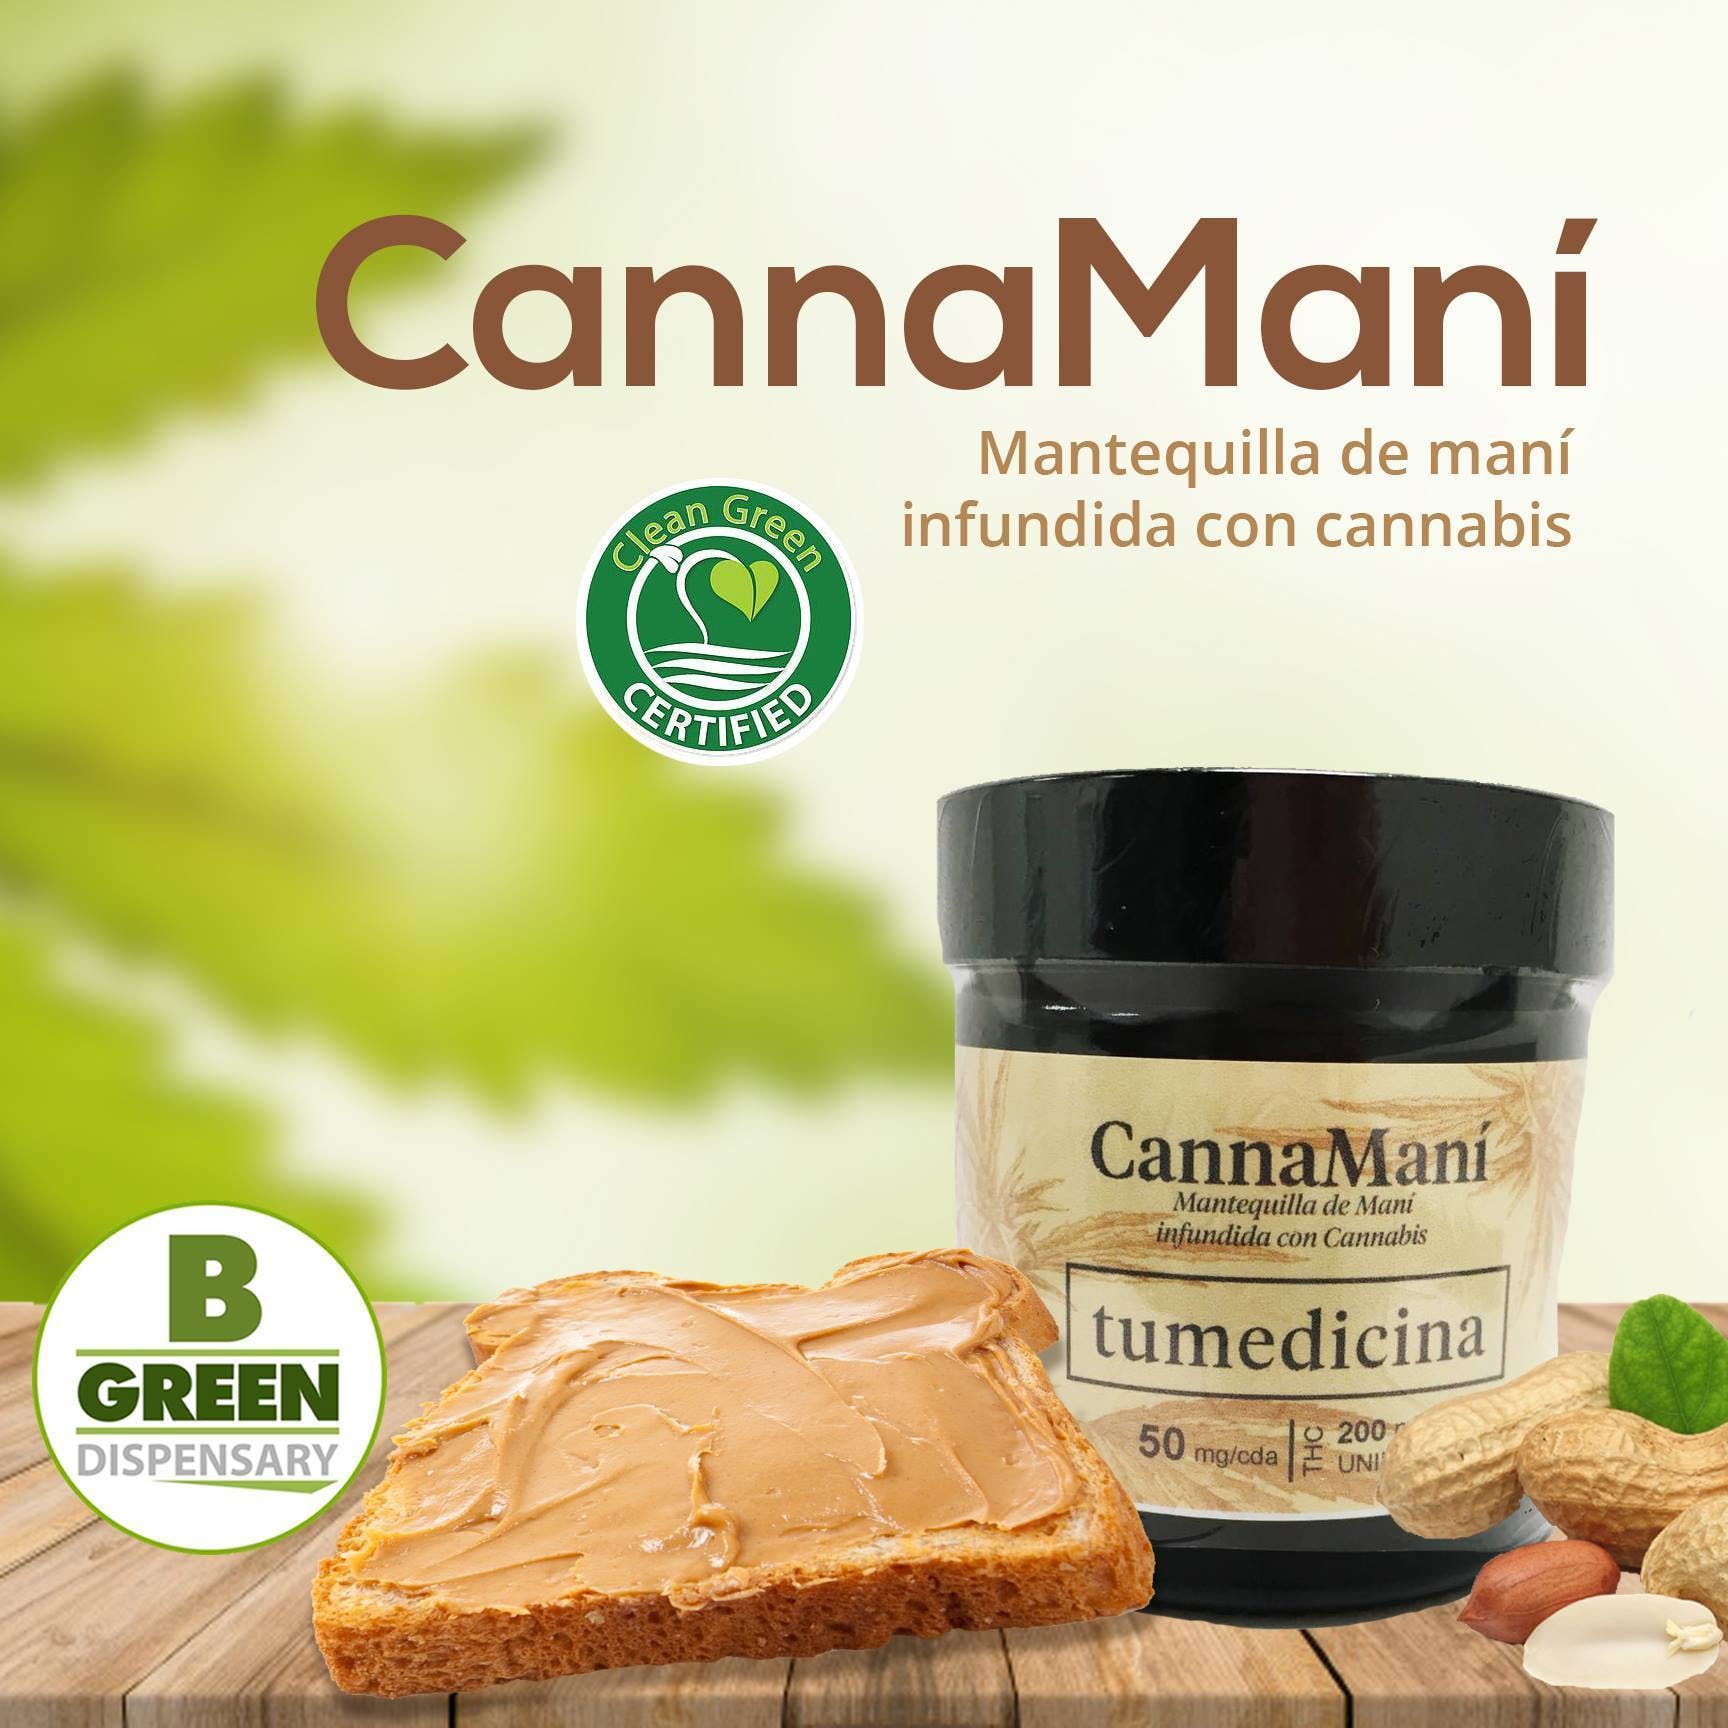 marijuana-dispensaries-bgreen-dispensary-in-san-germain-canna-manas